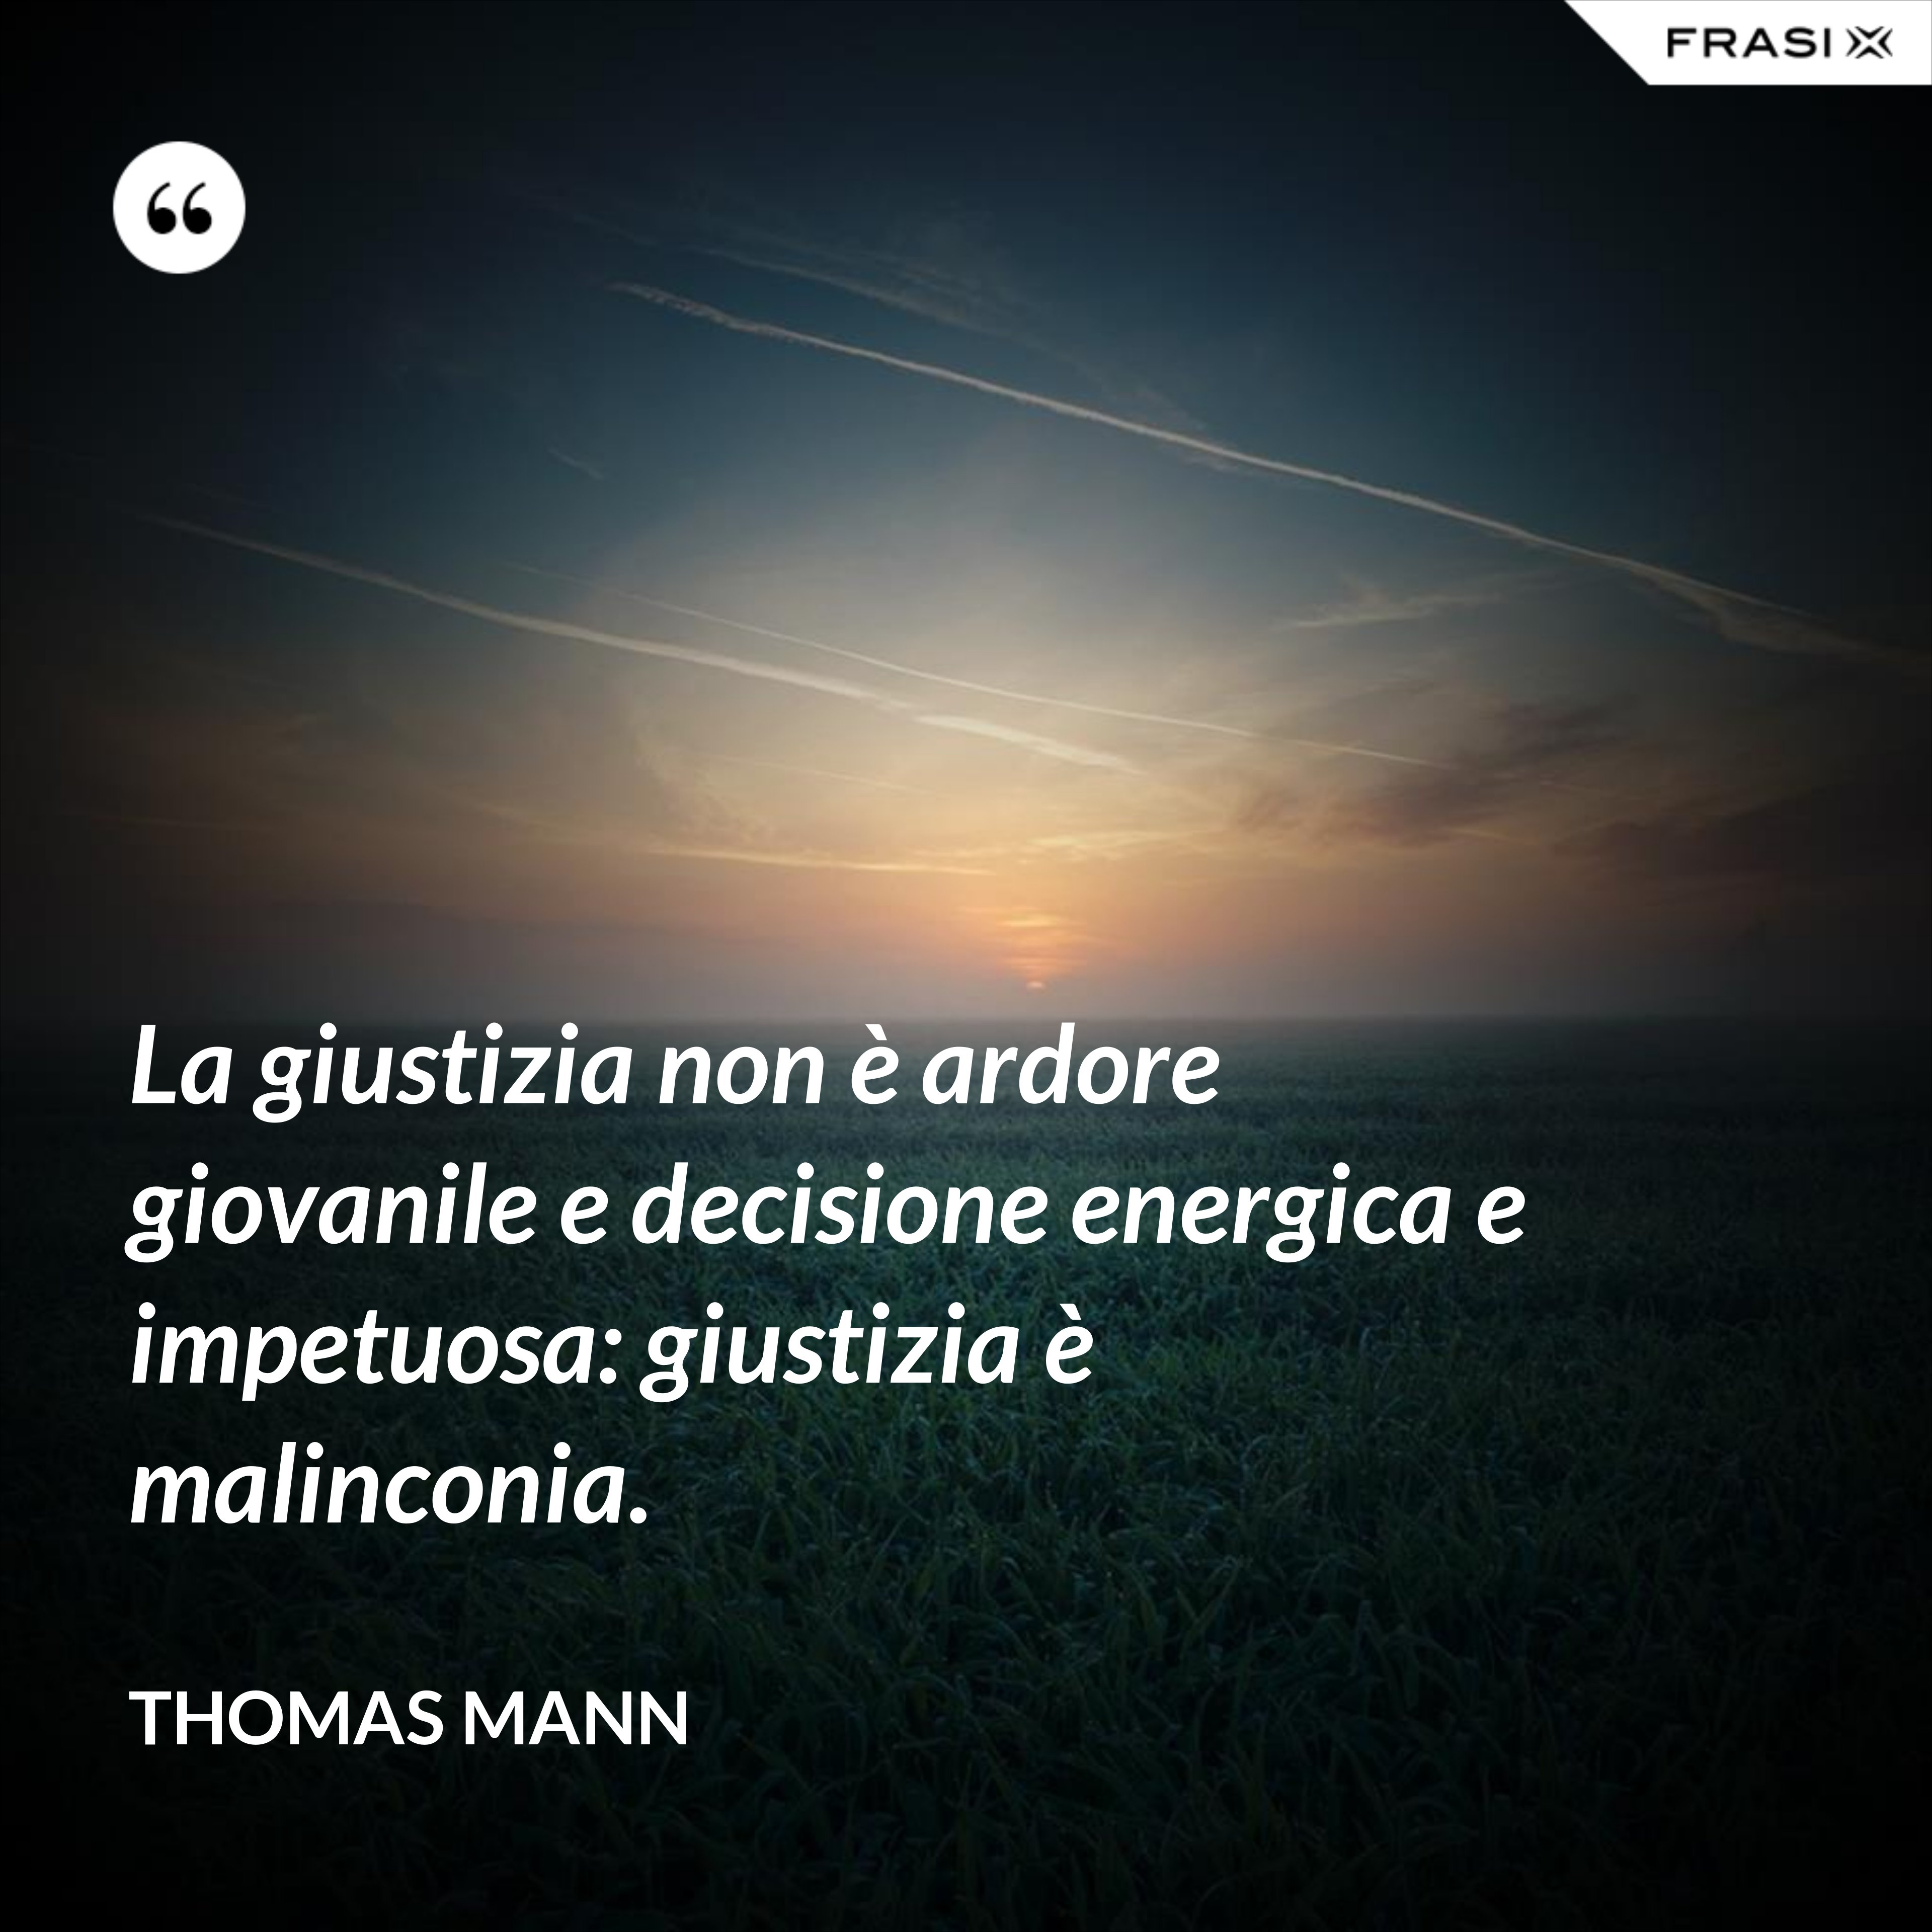 La giustizia non è ardore giovanile e decisione energica e impetuosa: giustizia è malinconia. - Thomas Mann